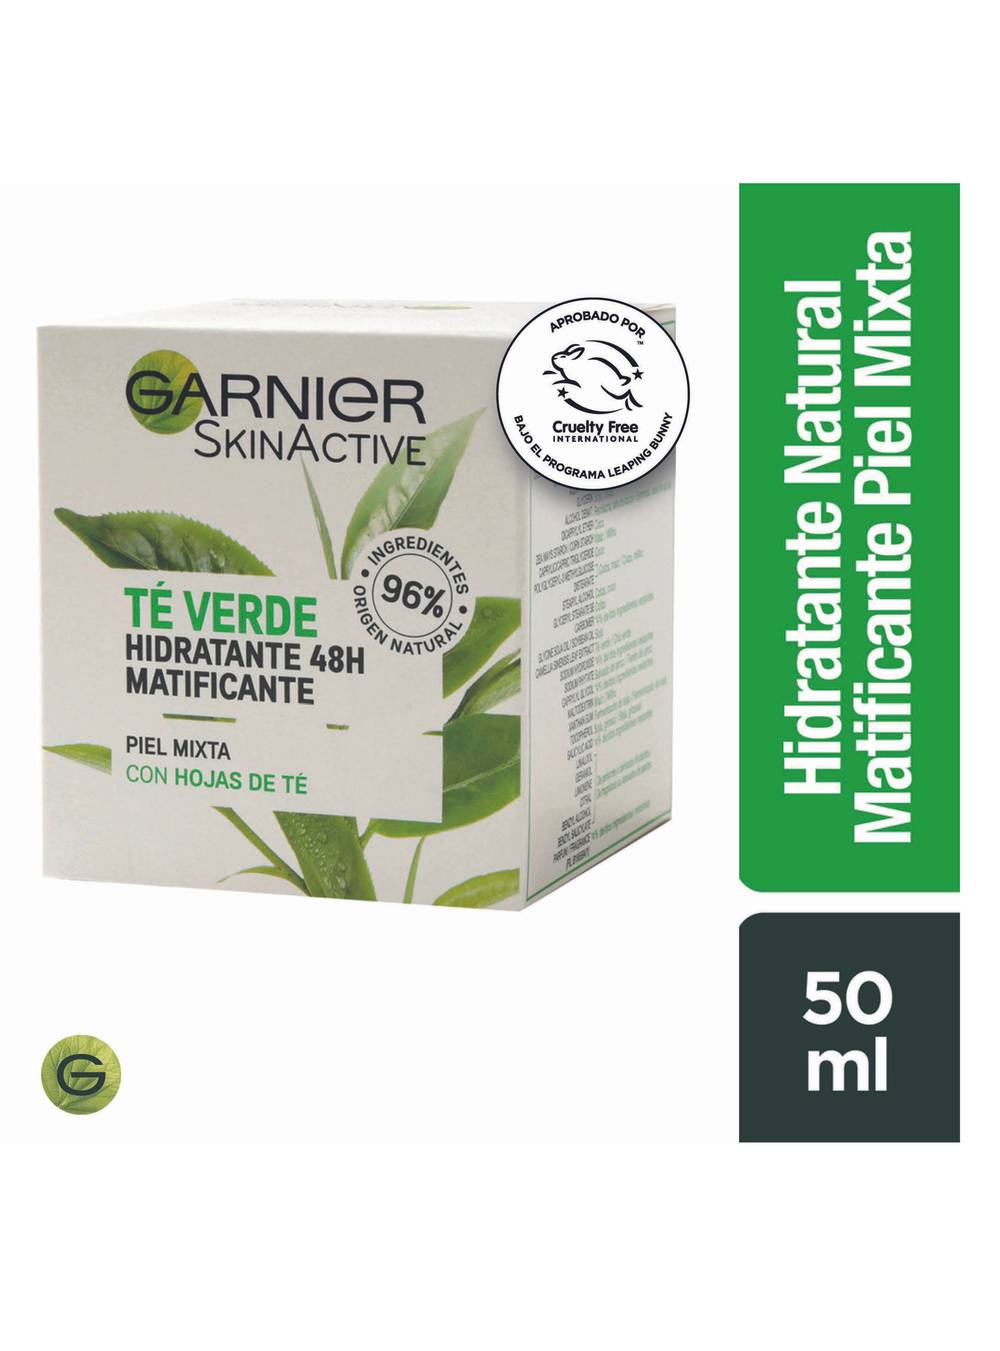 Garnier skin active crema hidratante natural de té verde (50 ml)